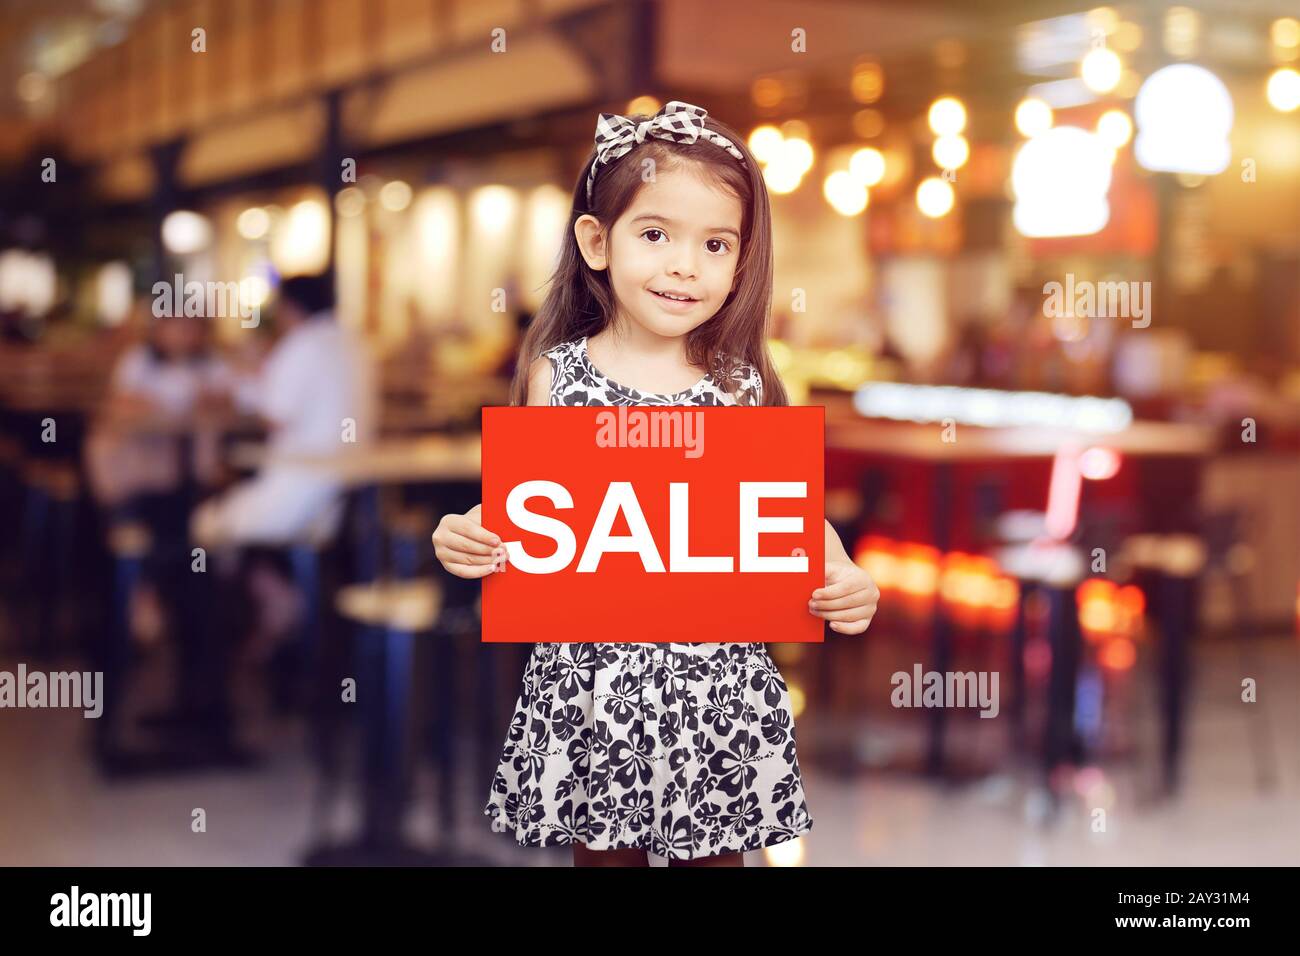 vendita sconto promozione per negozio concetto : adorabile ragazza tenuta segno rosso con vendita di testo in colore bianco di fronte al negozio, ristorante o caffè Foto Stock